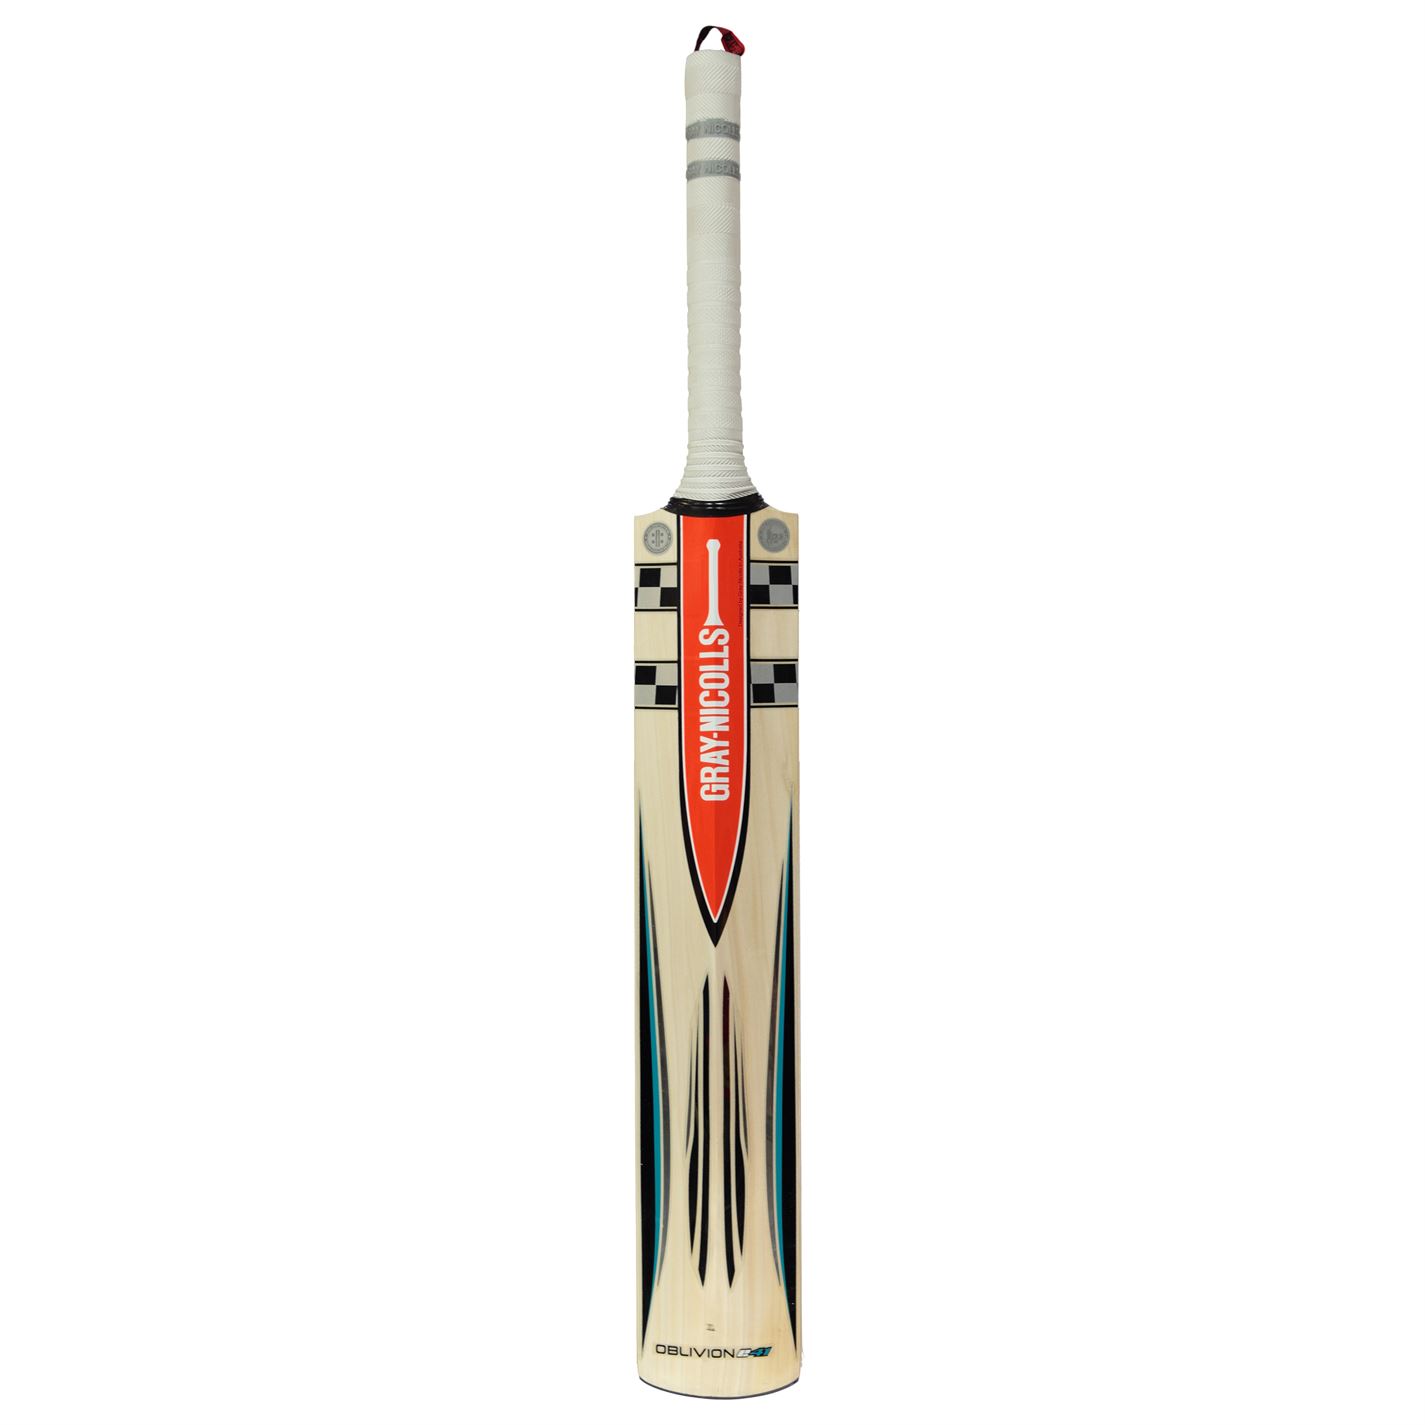 gri Nicolls Oblivion 550 Cricket Bat pentru adulti